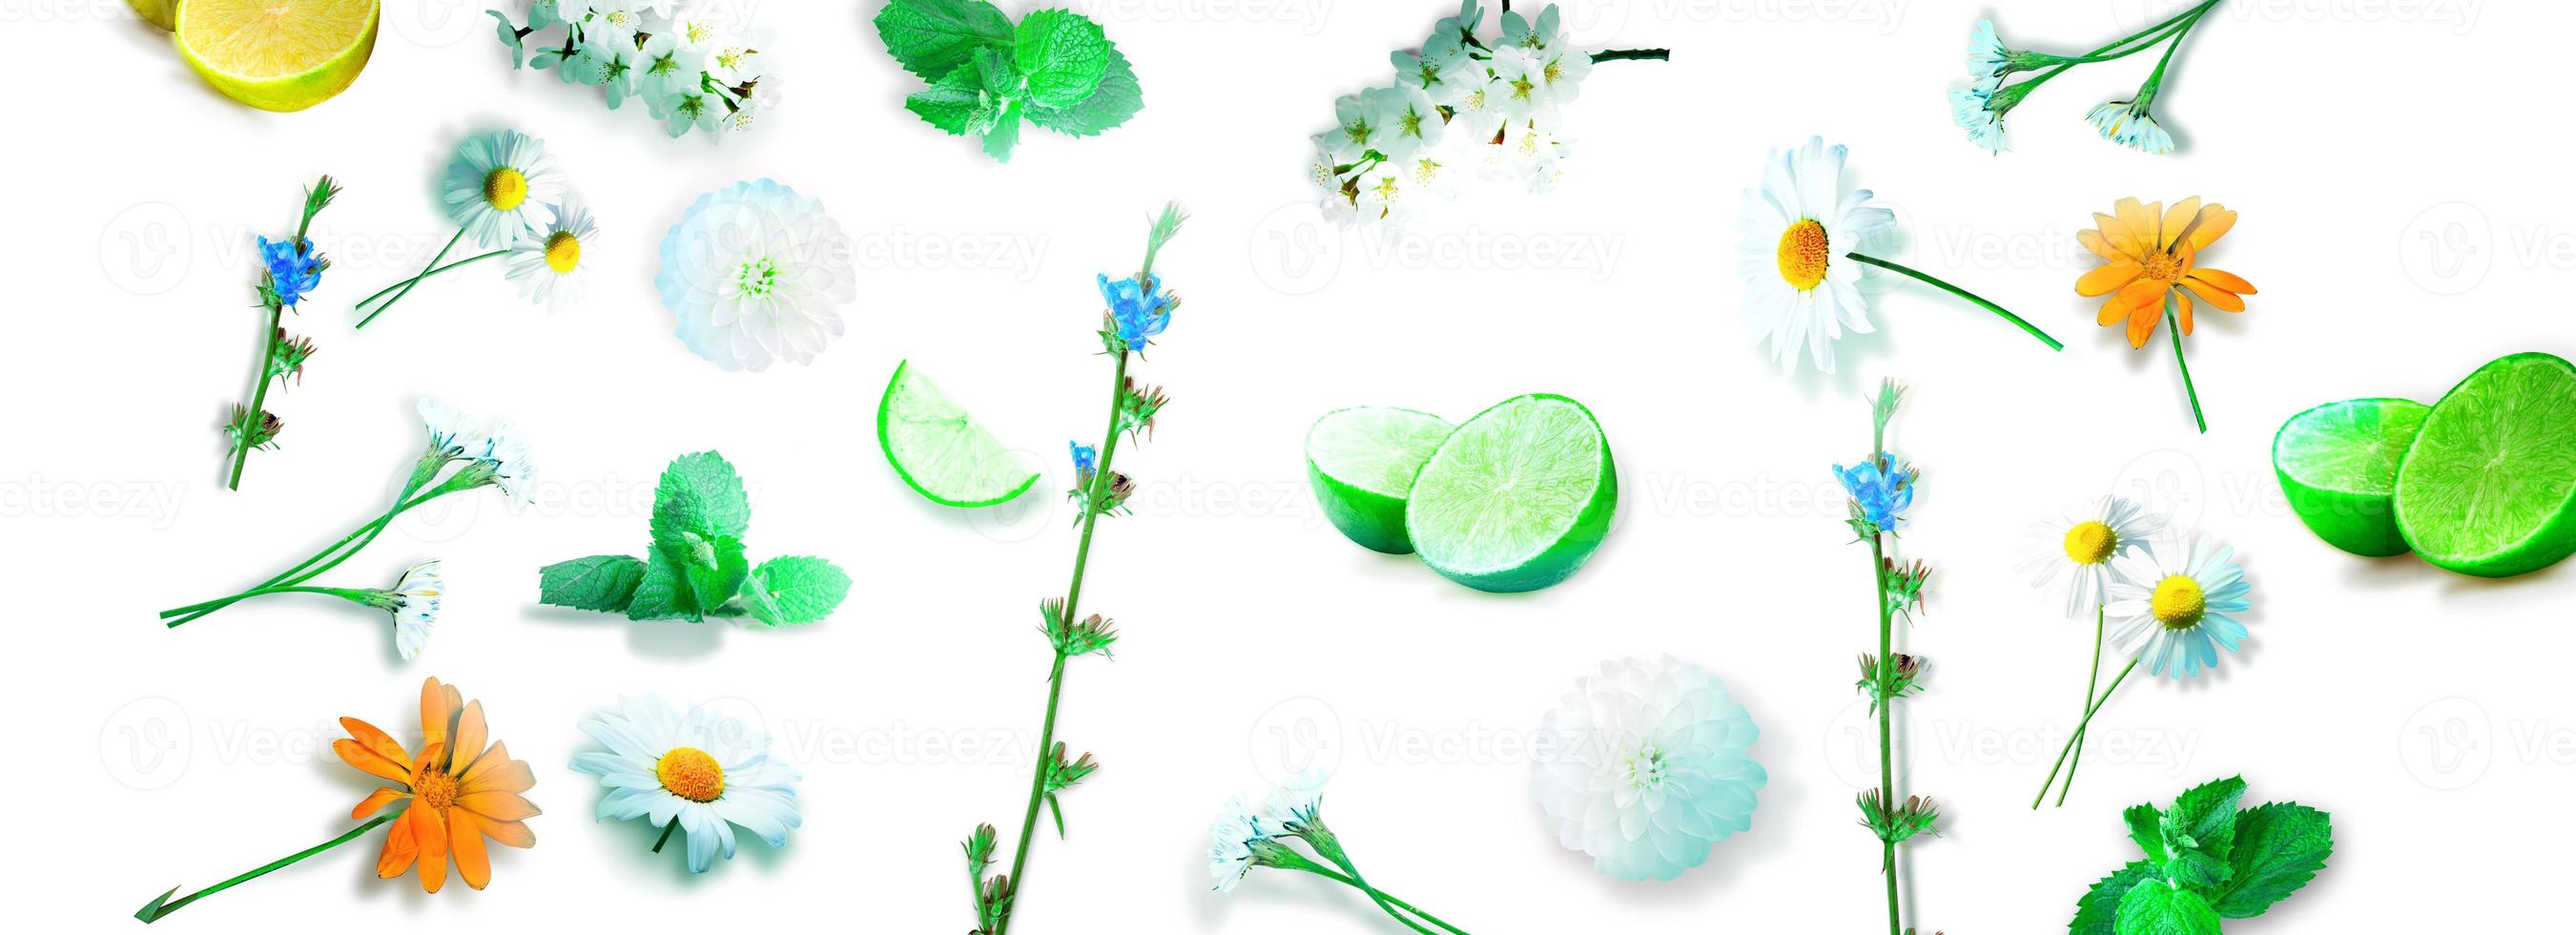 fiori ed erbe aromatiche. composizione floreale creativa primaverile. foto